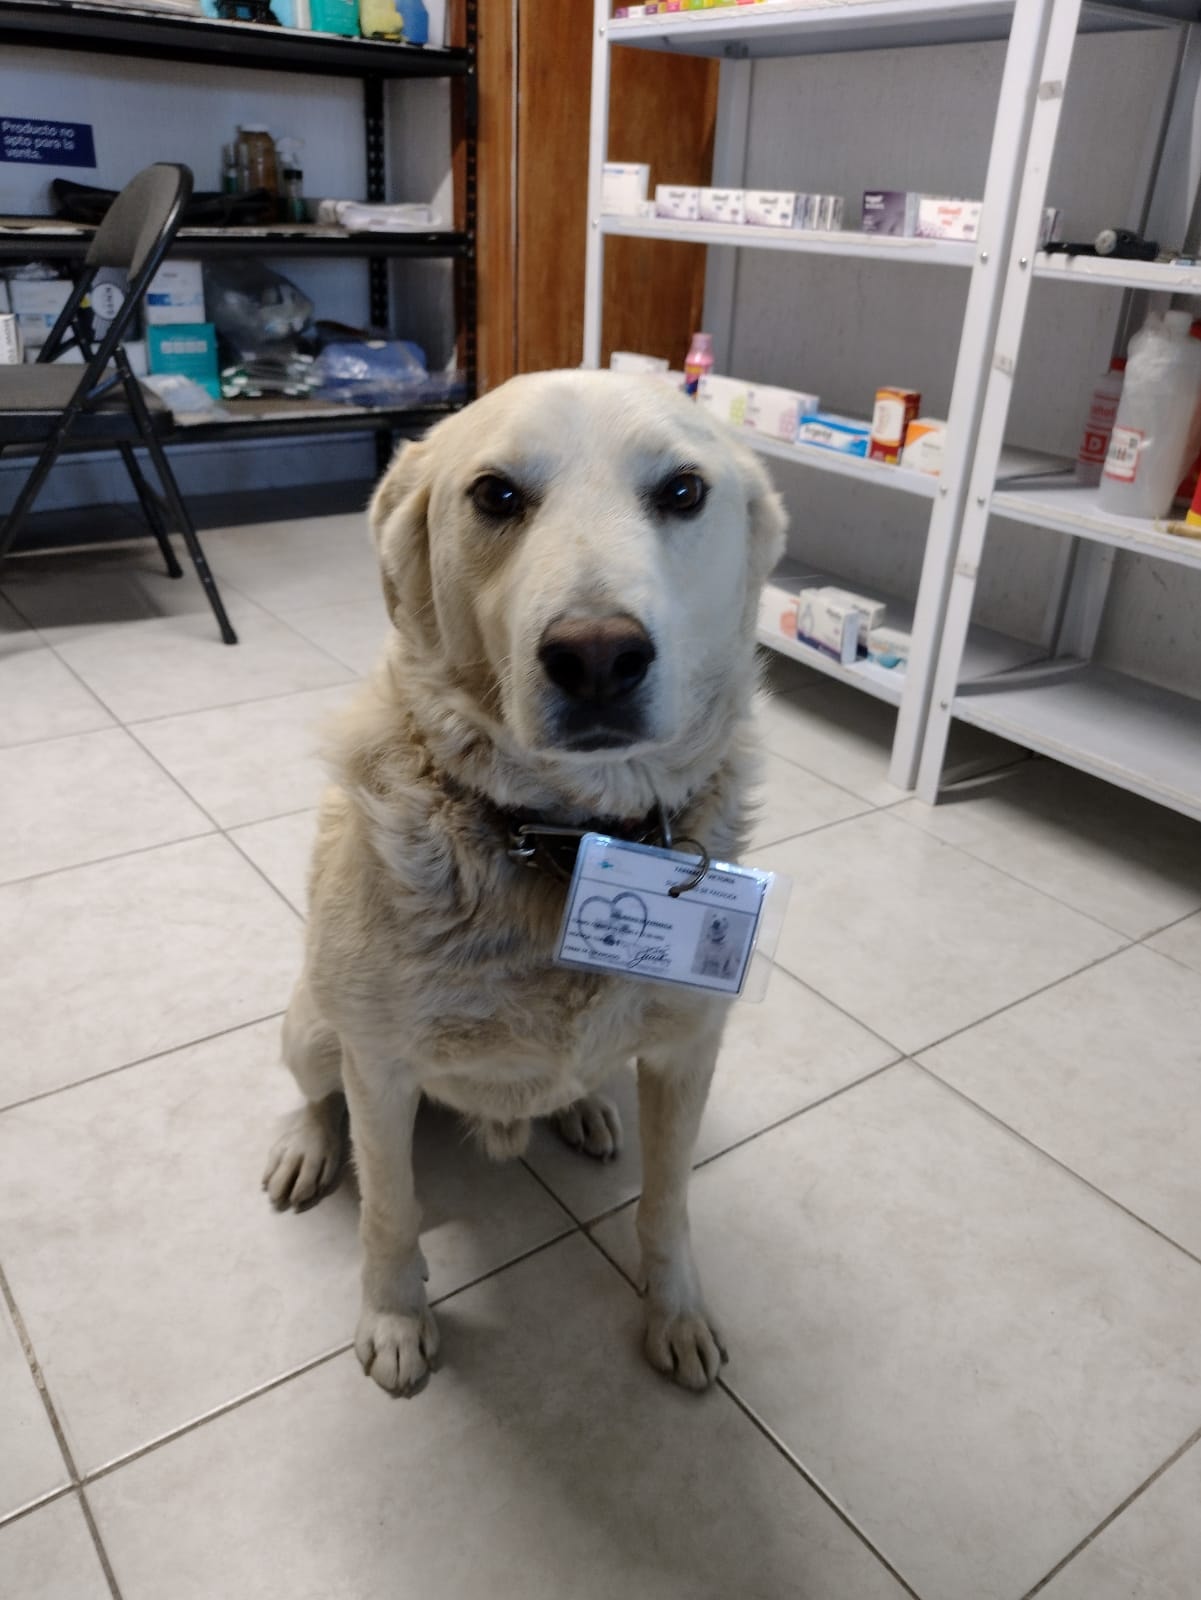 Farmacia contrata a perrito como jefe de seguridad y tiene su propio gafeteFarmacia contrata a perrito como jefe de seguridad y tiene su propio gafete